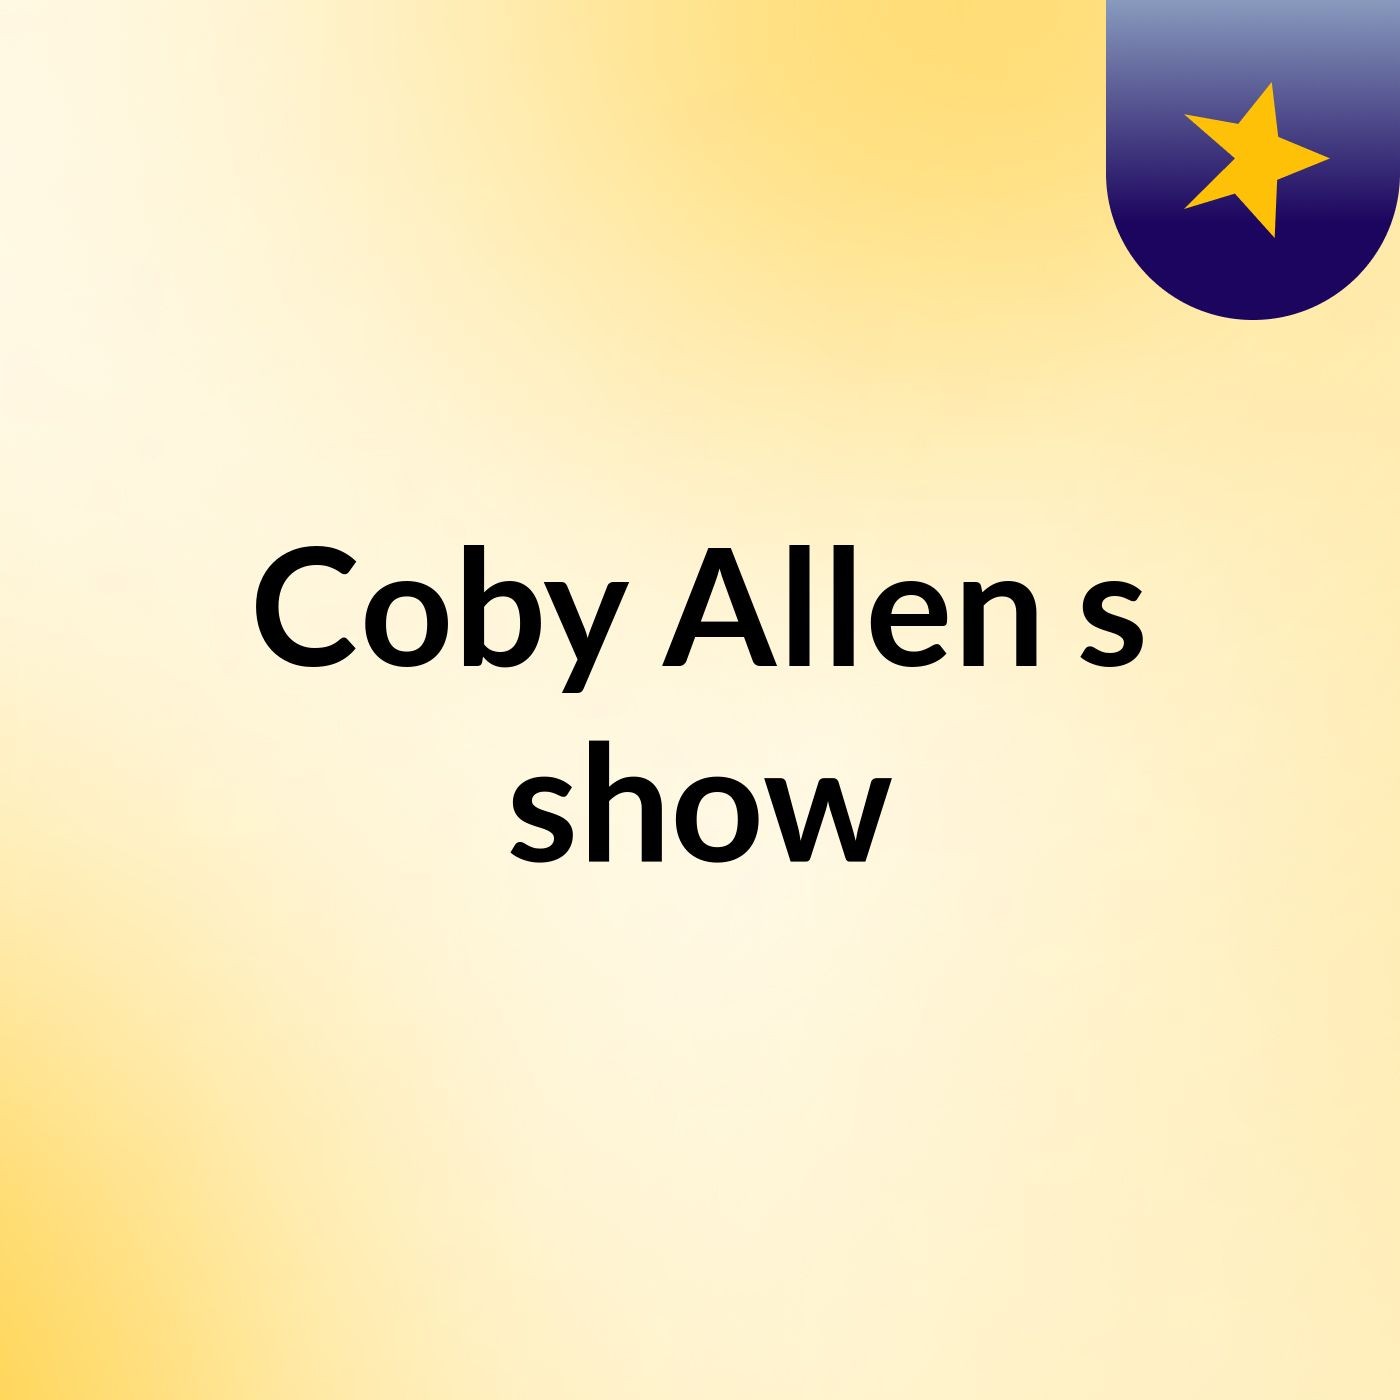 Coby Allen's show